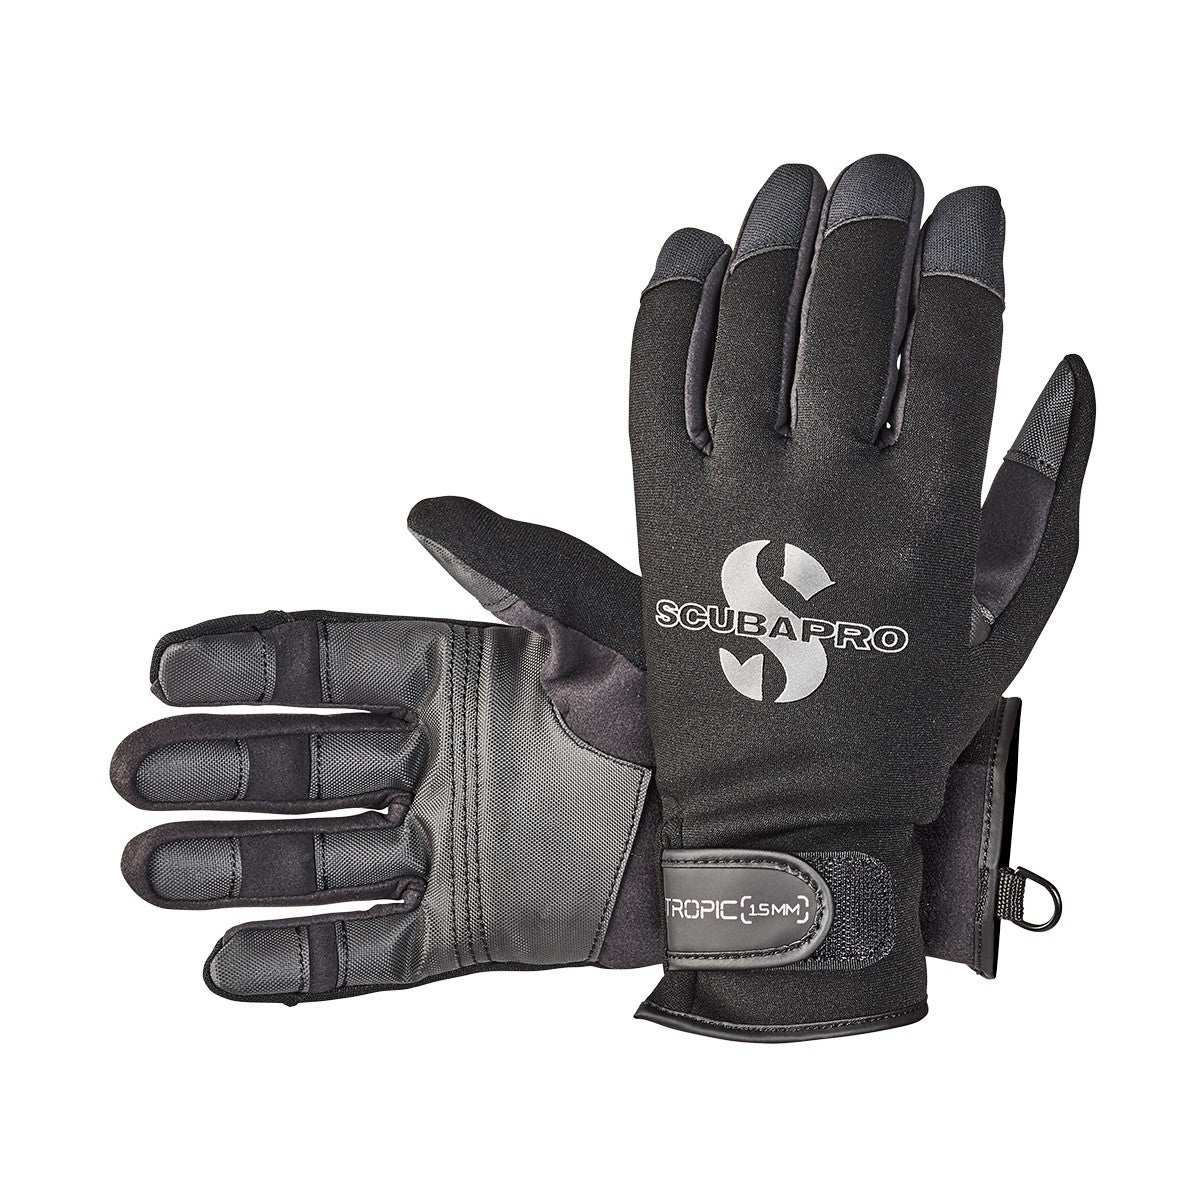 ScubaPro 1.5 mm Tropic Dive Gloves - DIPNDIVE